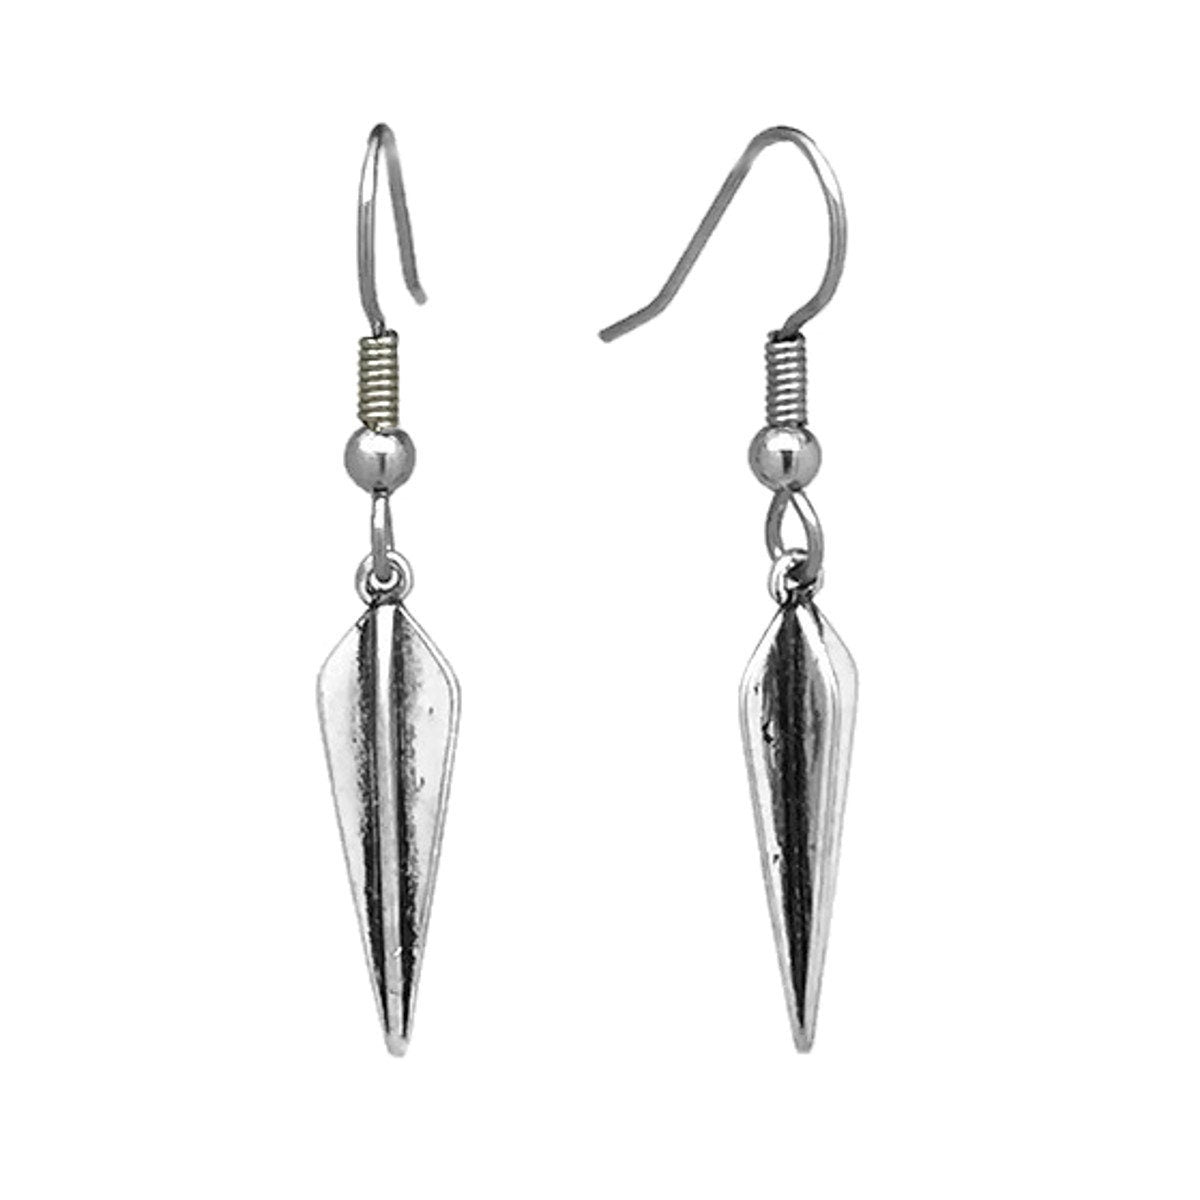 Silver Spike Earrings, Dagger Earrings, Rocker Jewelry, Dangle Earrings, Sensitive Ears, Stainless Steel French Hook Wires